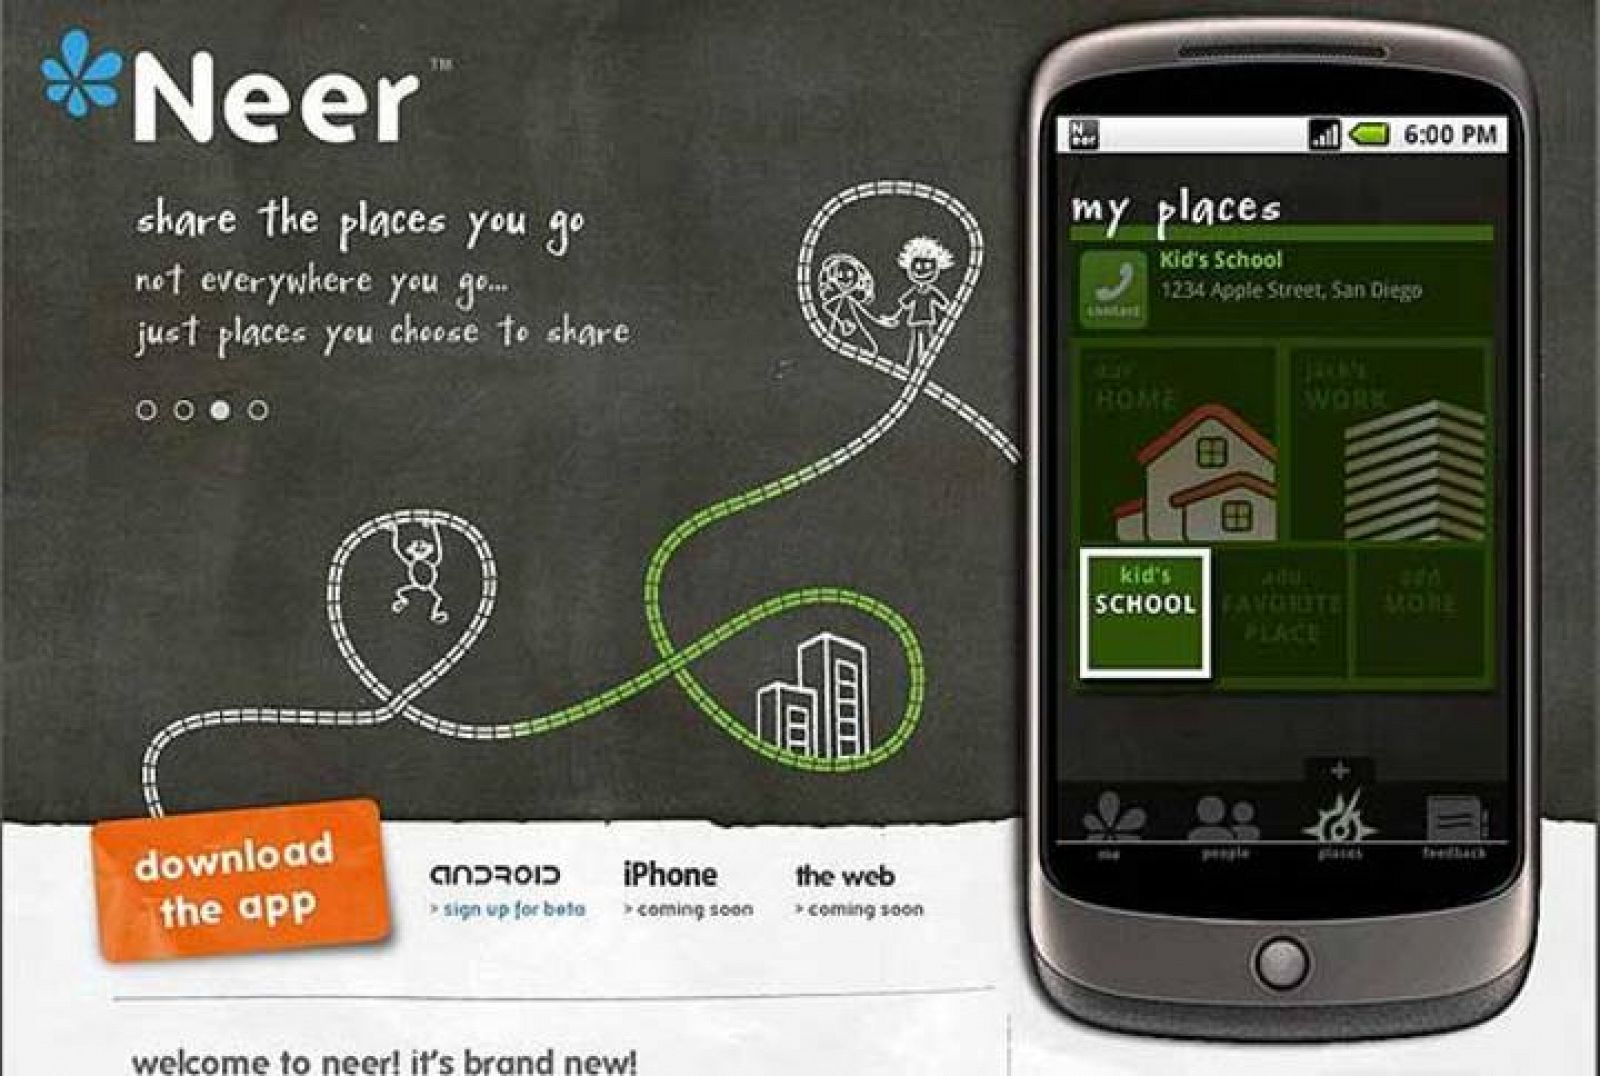 Neer ofrece a sus usuarios varias opciones de privacidad a la hora de mostrar su localización